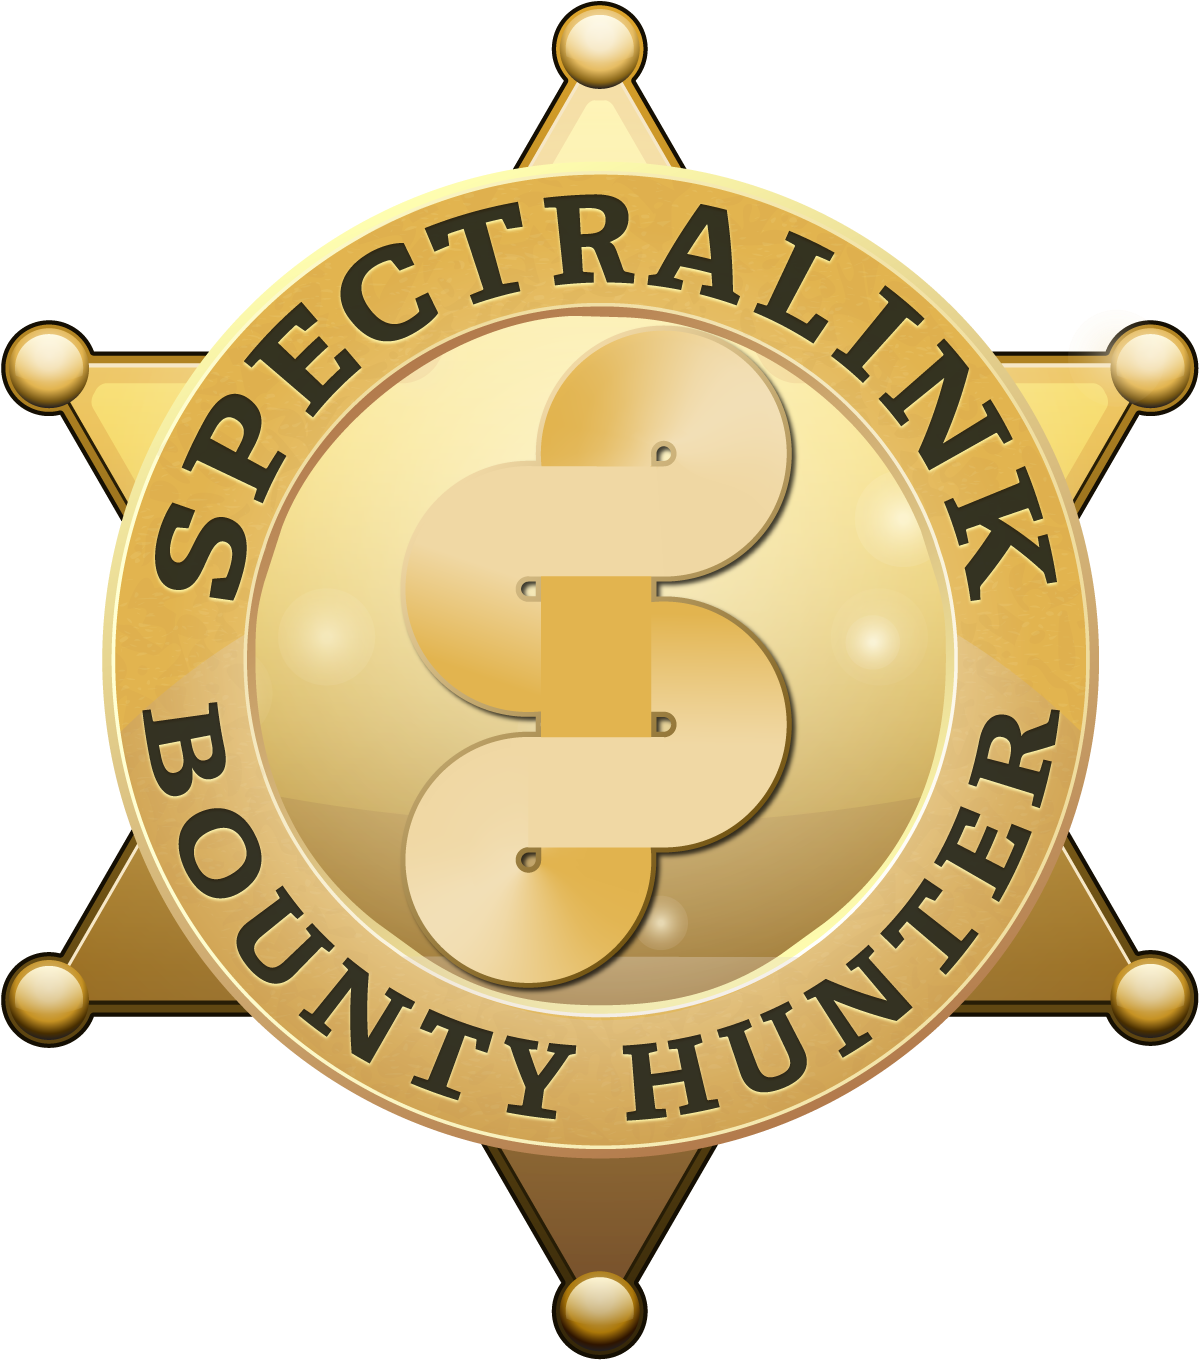 Spectralink Bounty Hunter Incentive - Placa De Sheriff Dorada Vector (1440x1440), Png Download